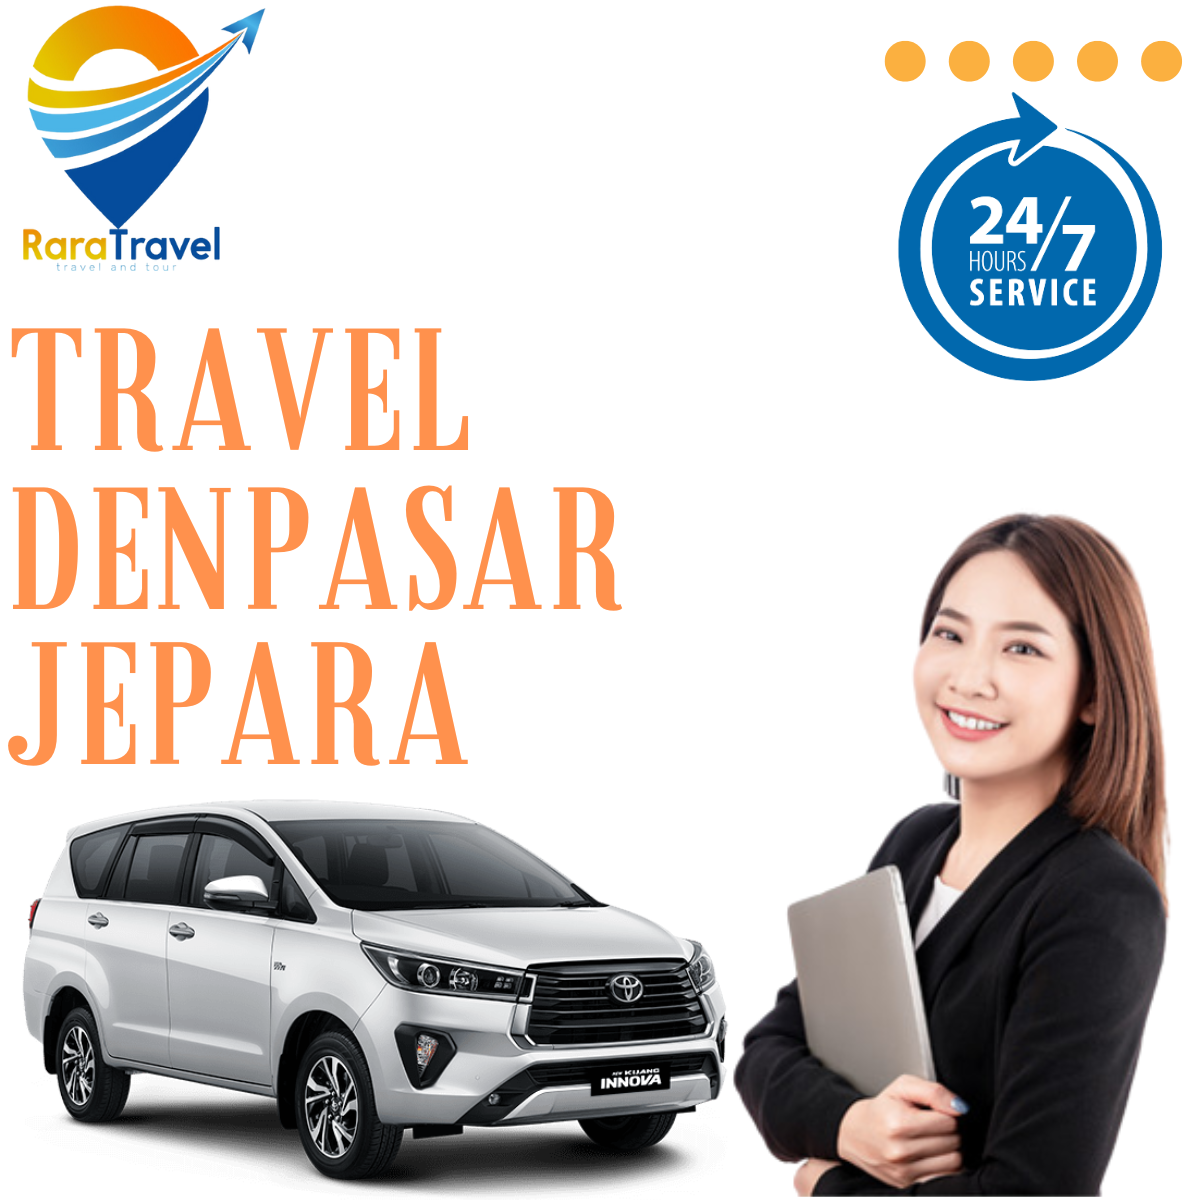 Travel Denpasar Jepara: Harga Tiket Murah, Jadwal, Fasilitas